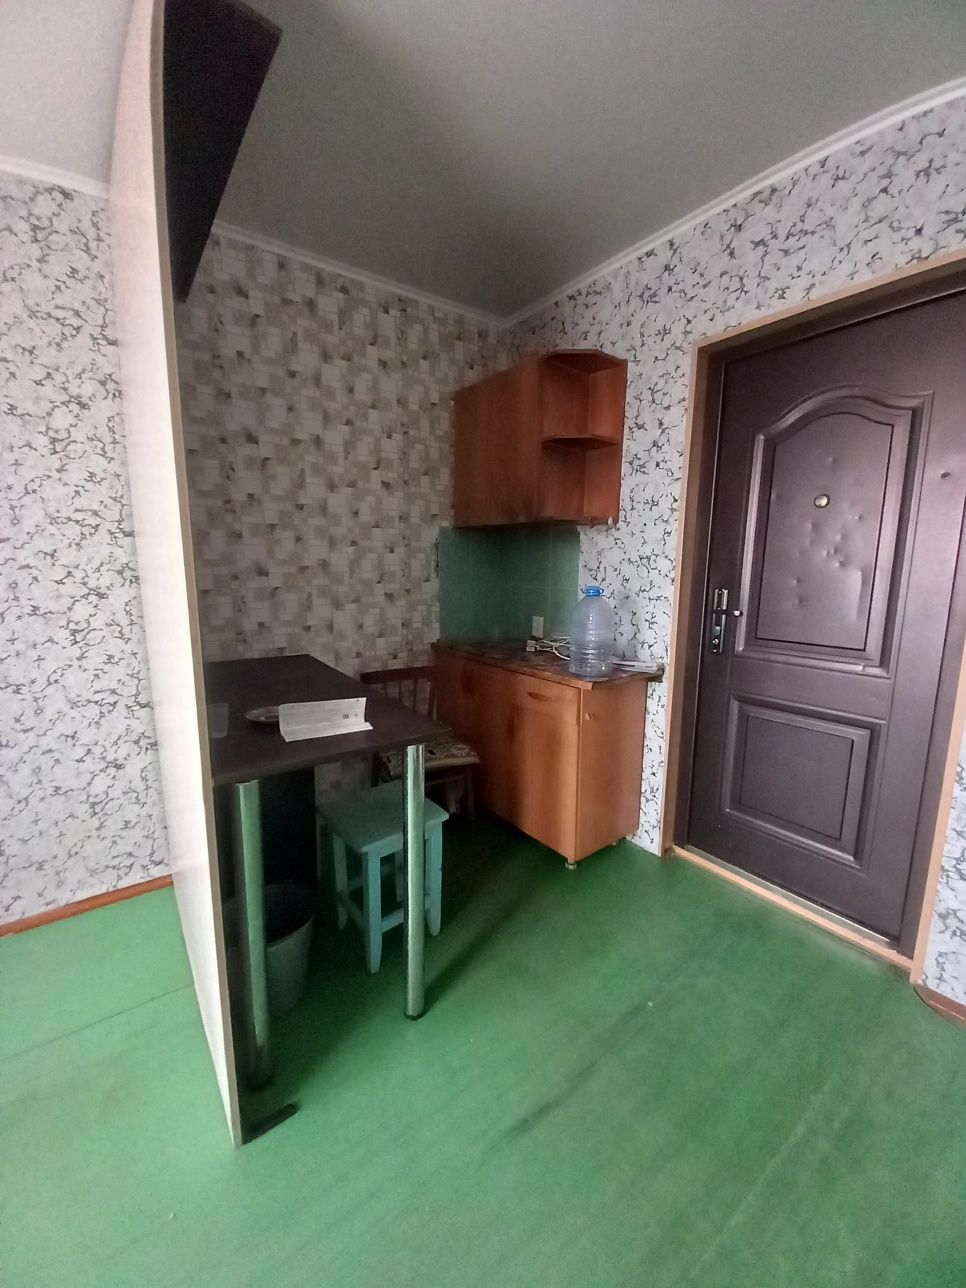 Продается комнатная в секционном общежитии.  Район Черёмушки.